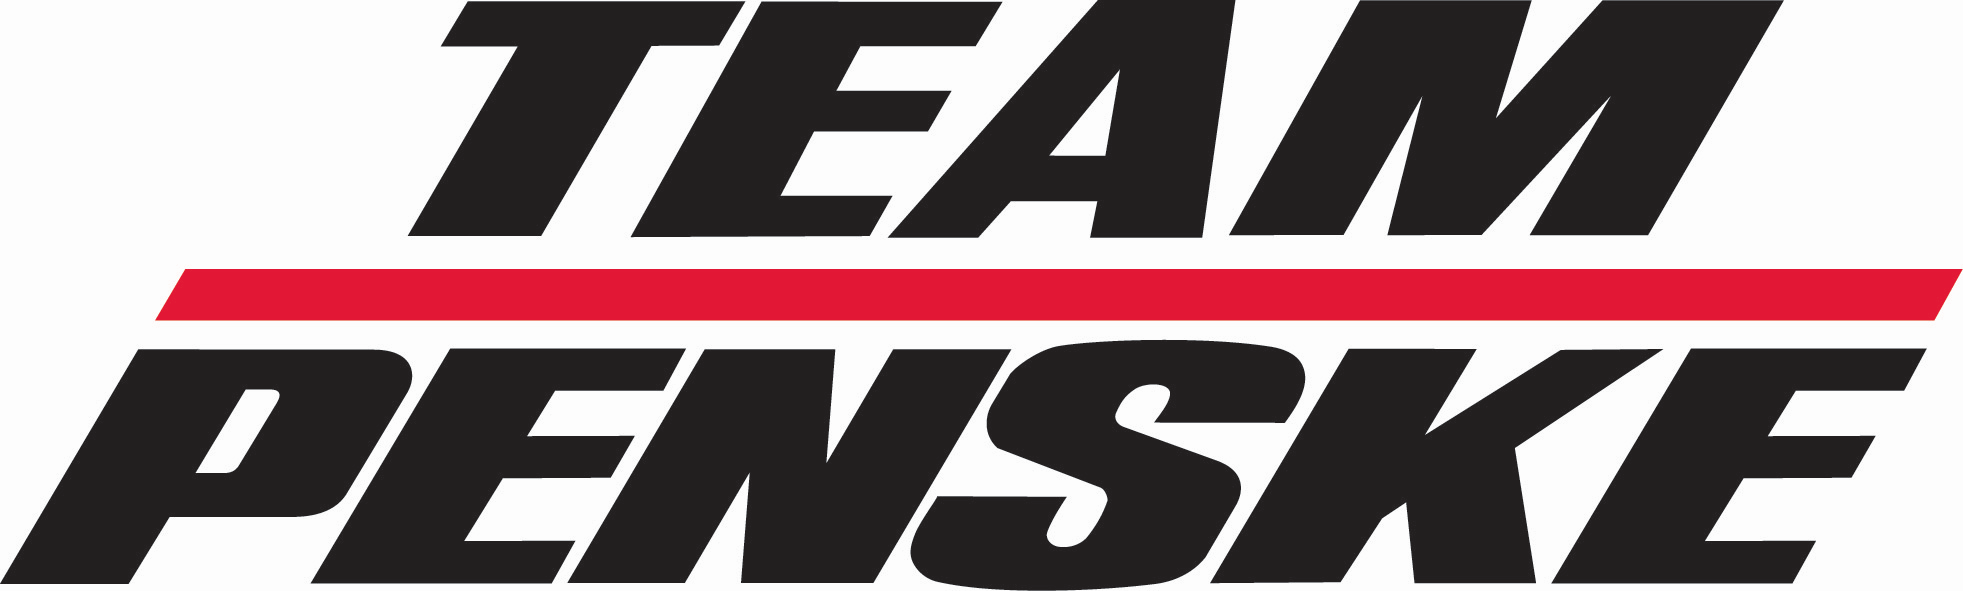 Penske Logo - Team Penske Primary Logo - NASCAR (NASCAR) - Chris Creamer's Sports ...